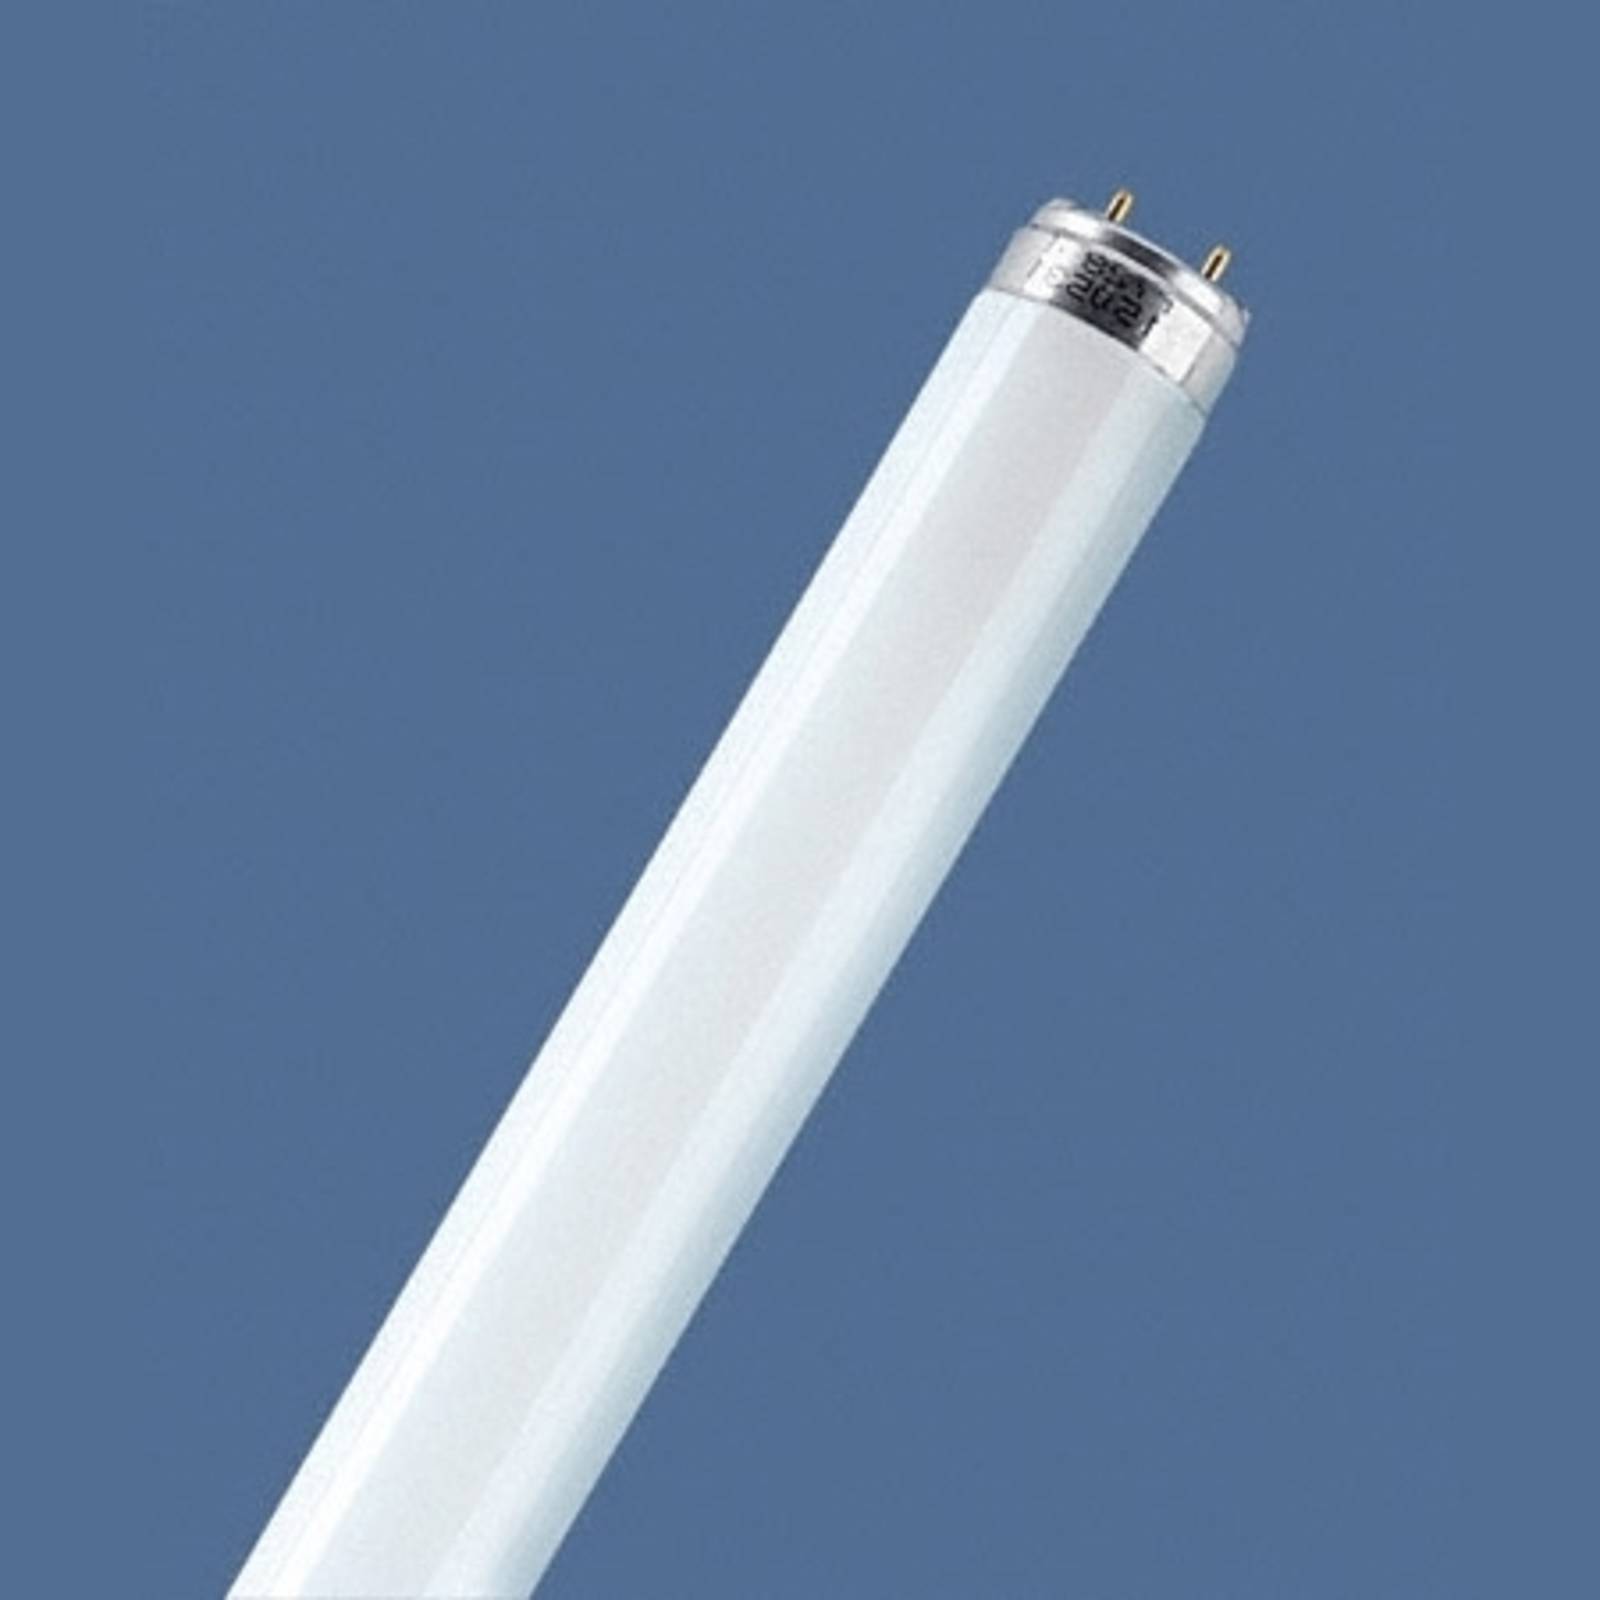 Fluoreszkáló cső G13 T8 18W 840 Lumilux